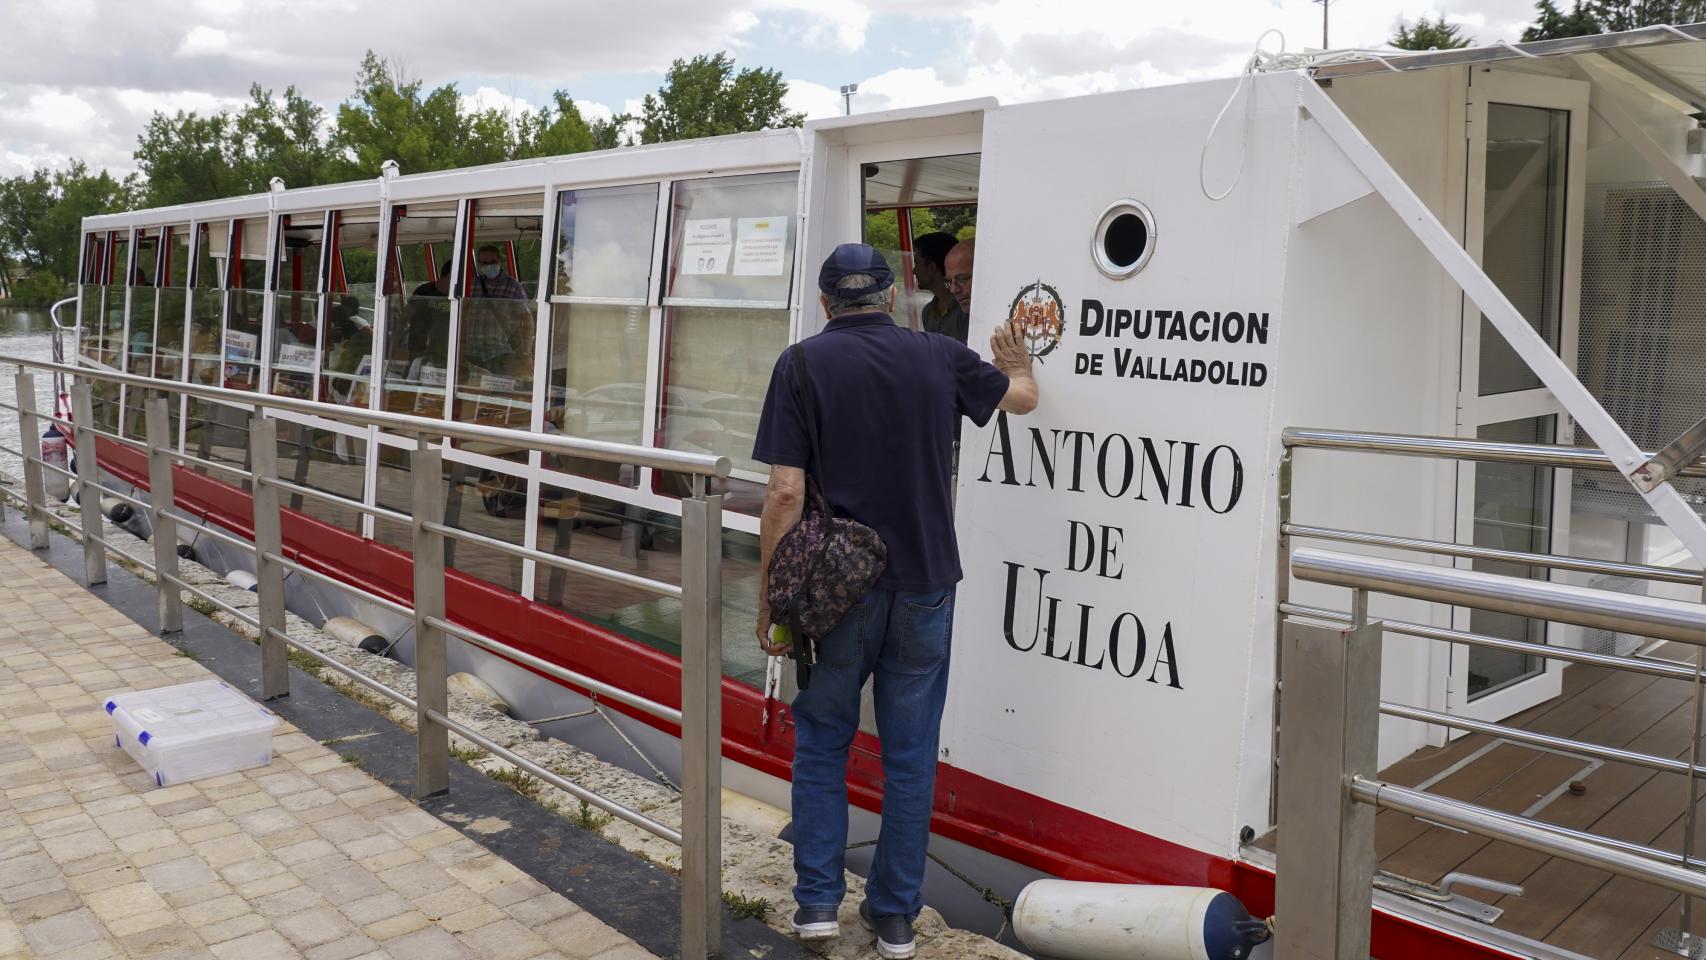 El famoso barco de Antonio de Ulloa vuelve a navegar por la provincia de Valladolid